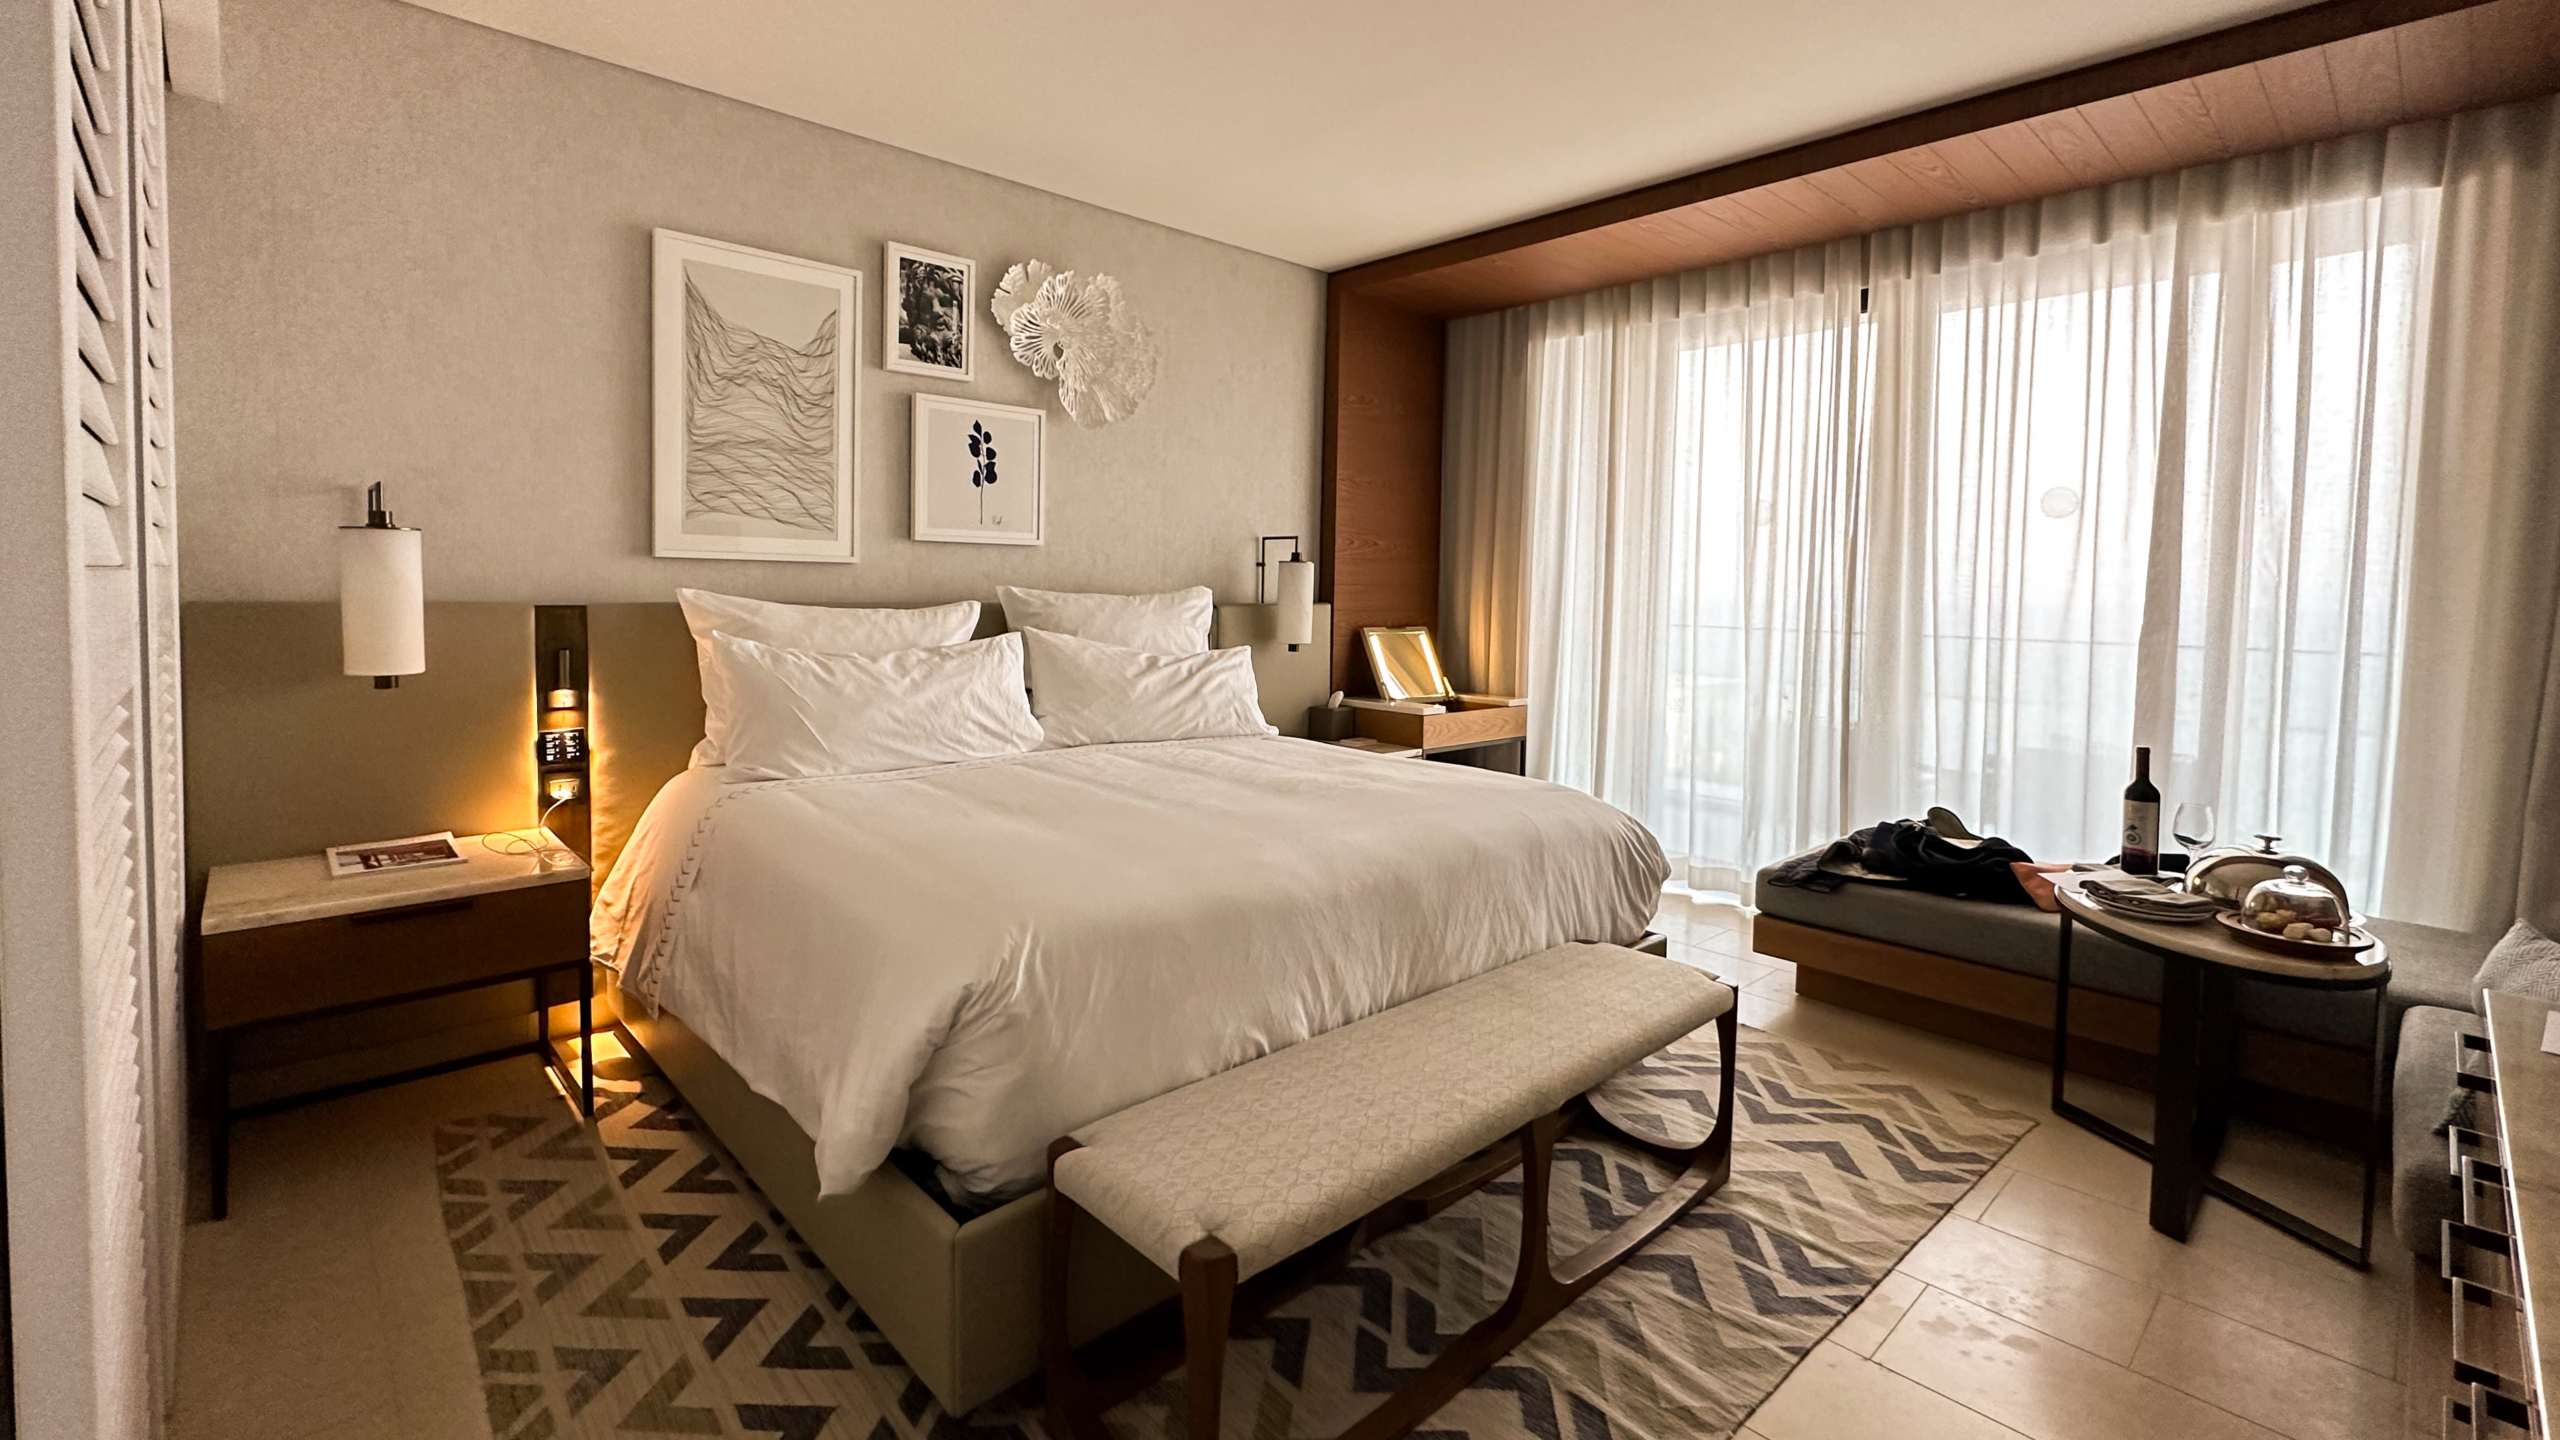 amara hotel cipro - deluxe bedroom | @saramilletti